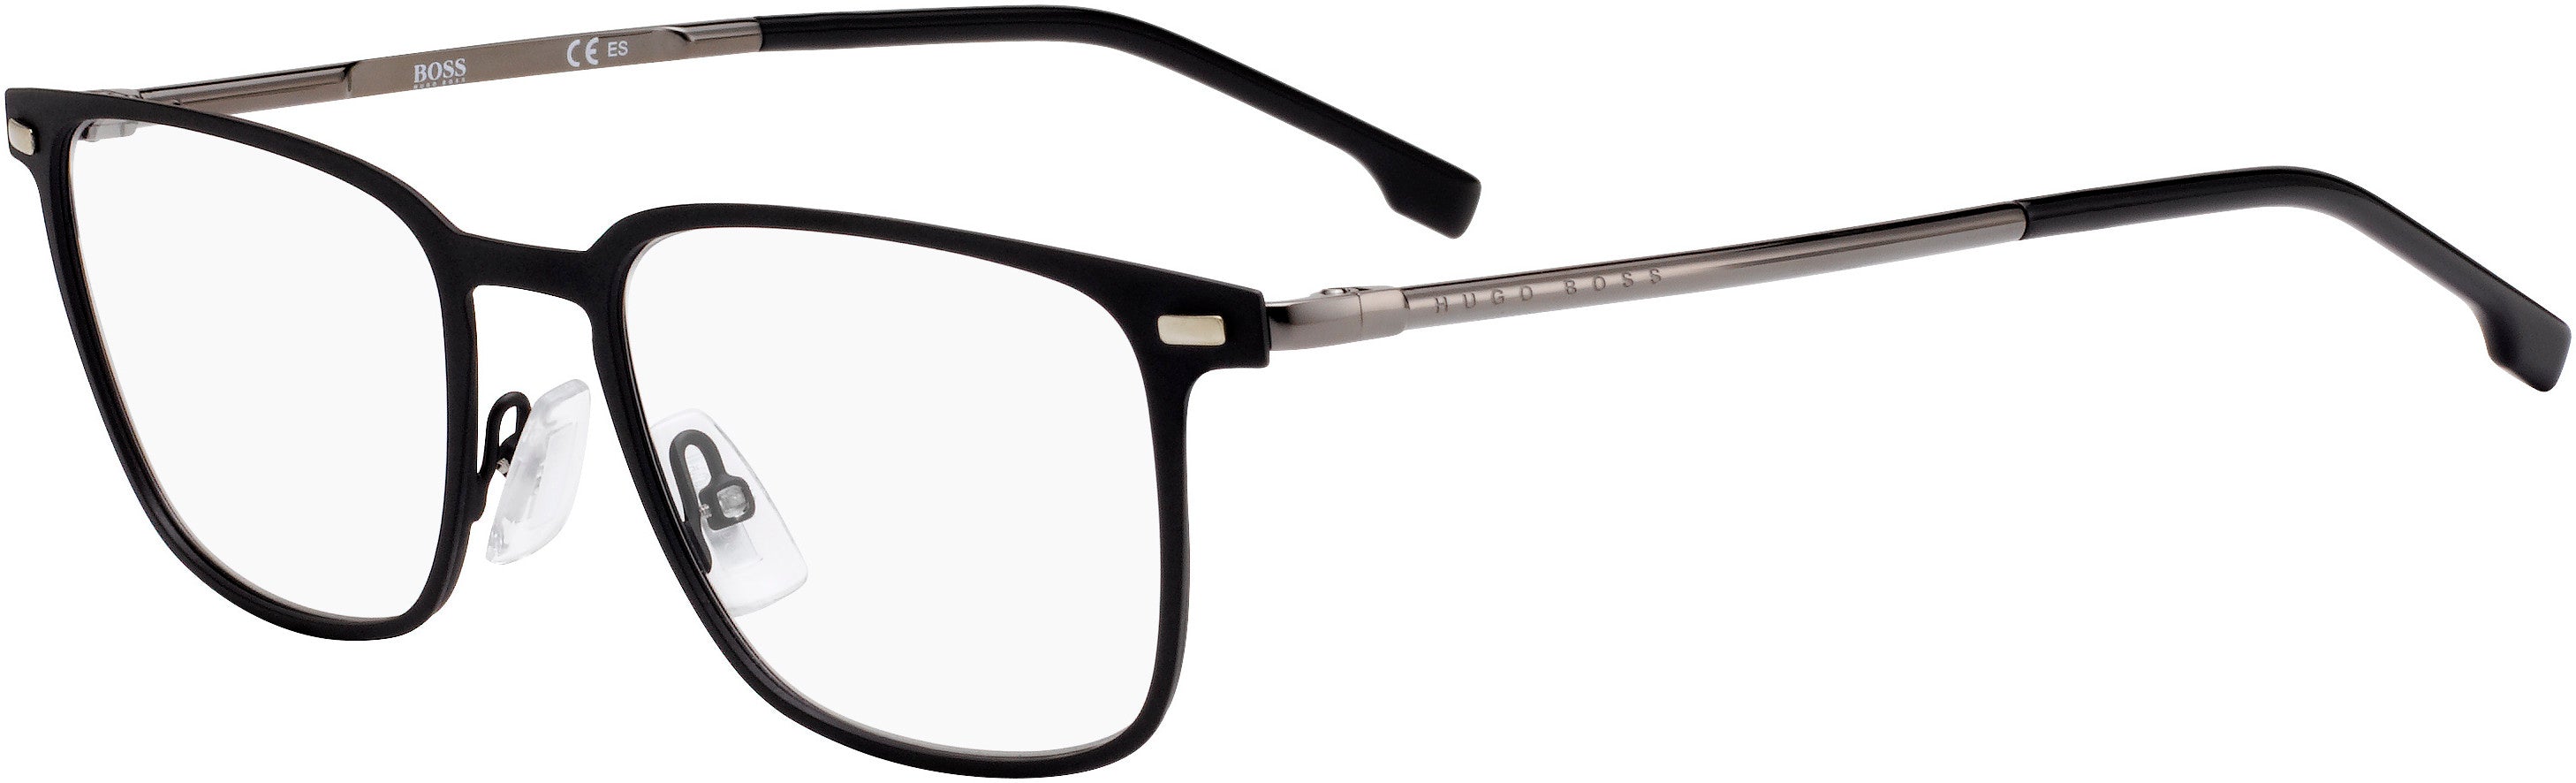 Boss (hub) Boss 1021 Rectangular Eyeglasses 0003-0003  Matte Black (00 Demo Lens)